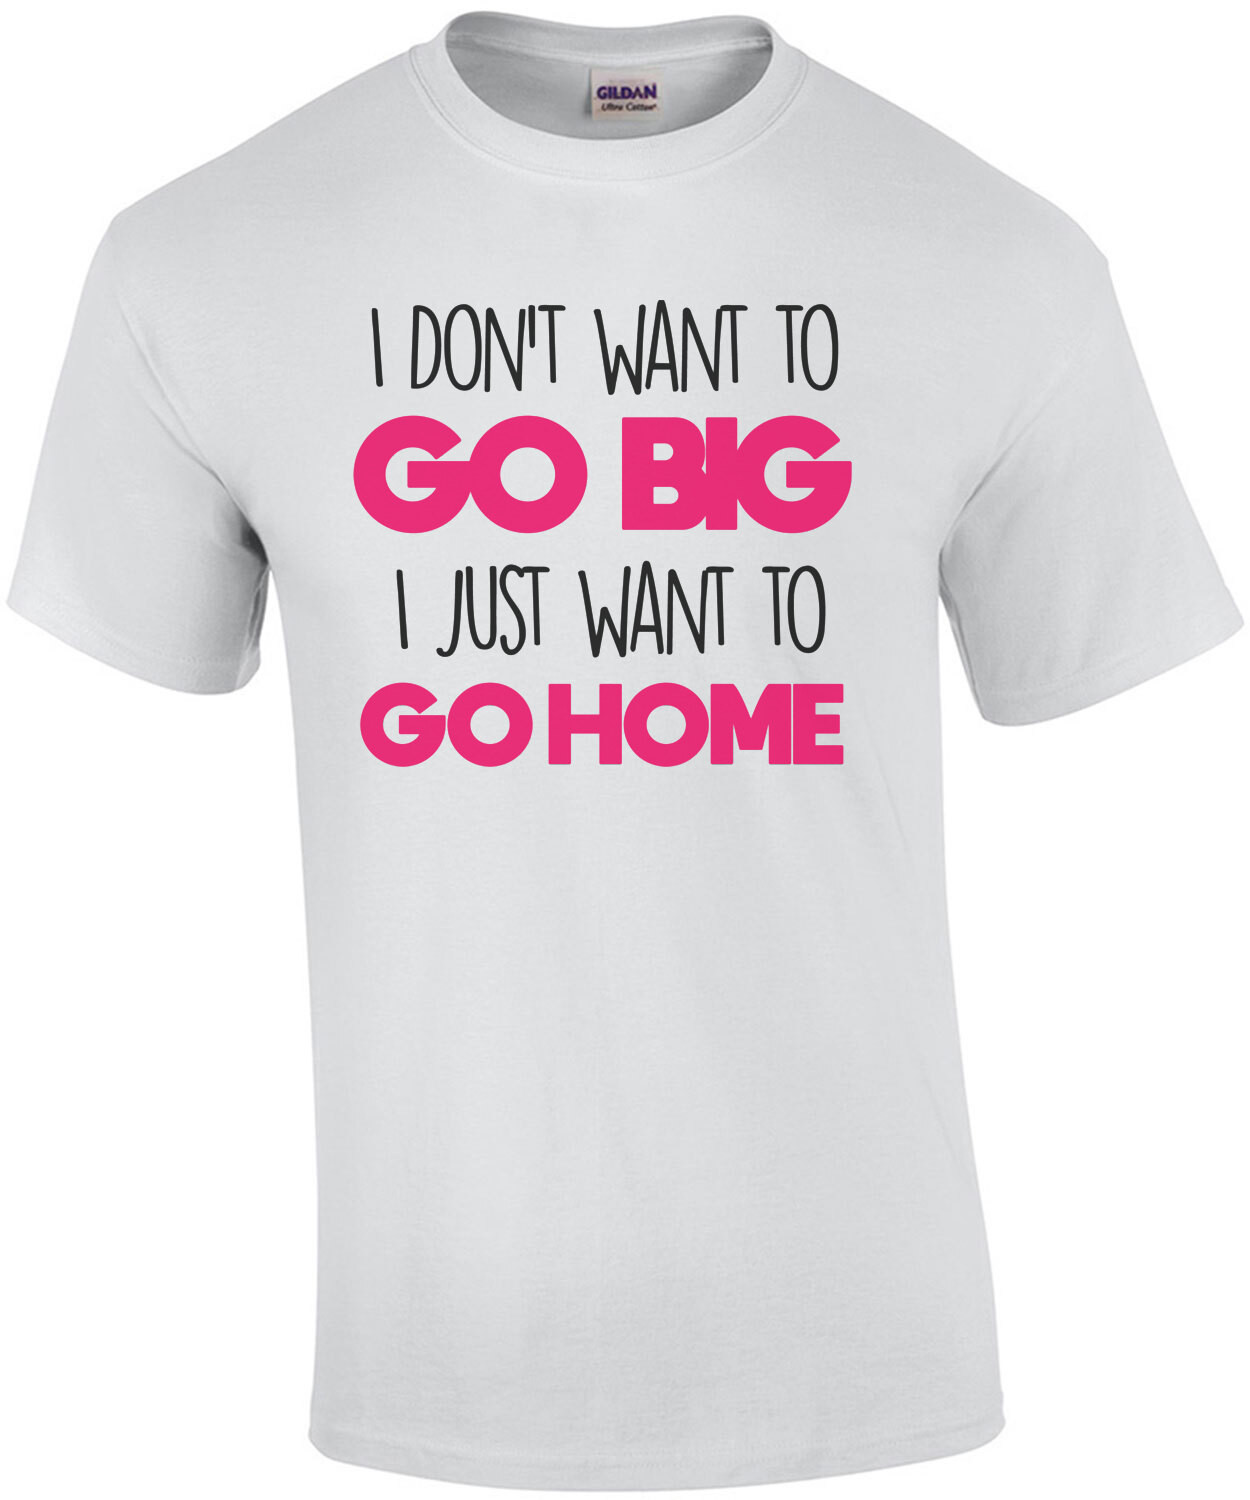 I don't want to go big - I just want to go home - funny t-shirt